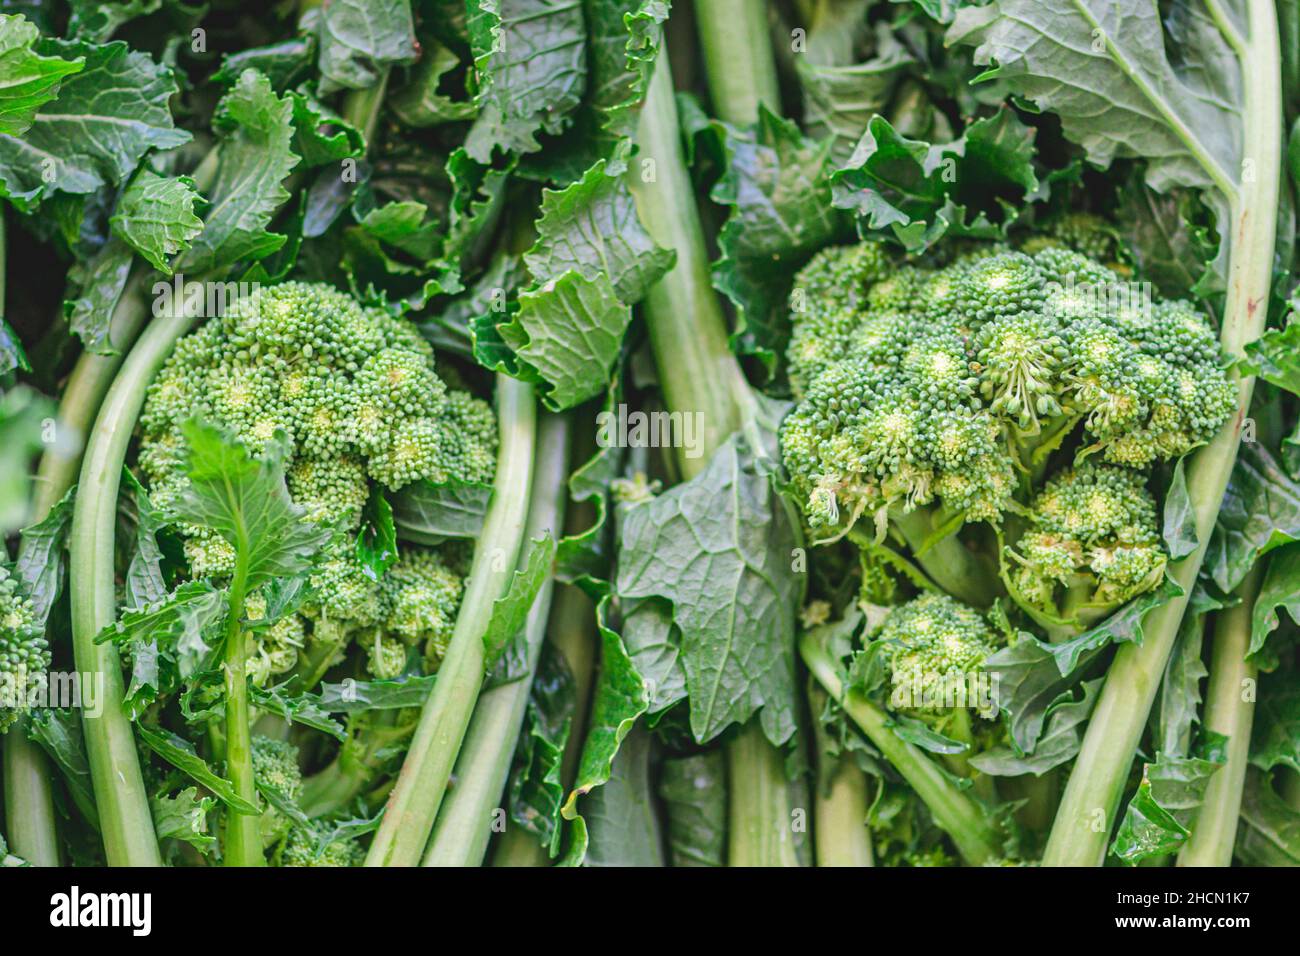 Cime di rapa, Rapini oder Brokkoli rabe auf einem Lebensmittelmarkt, grünes Kreuzgemüse, Gemüse, mediterrane Küche, Apulien, Italien Stockfoto